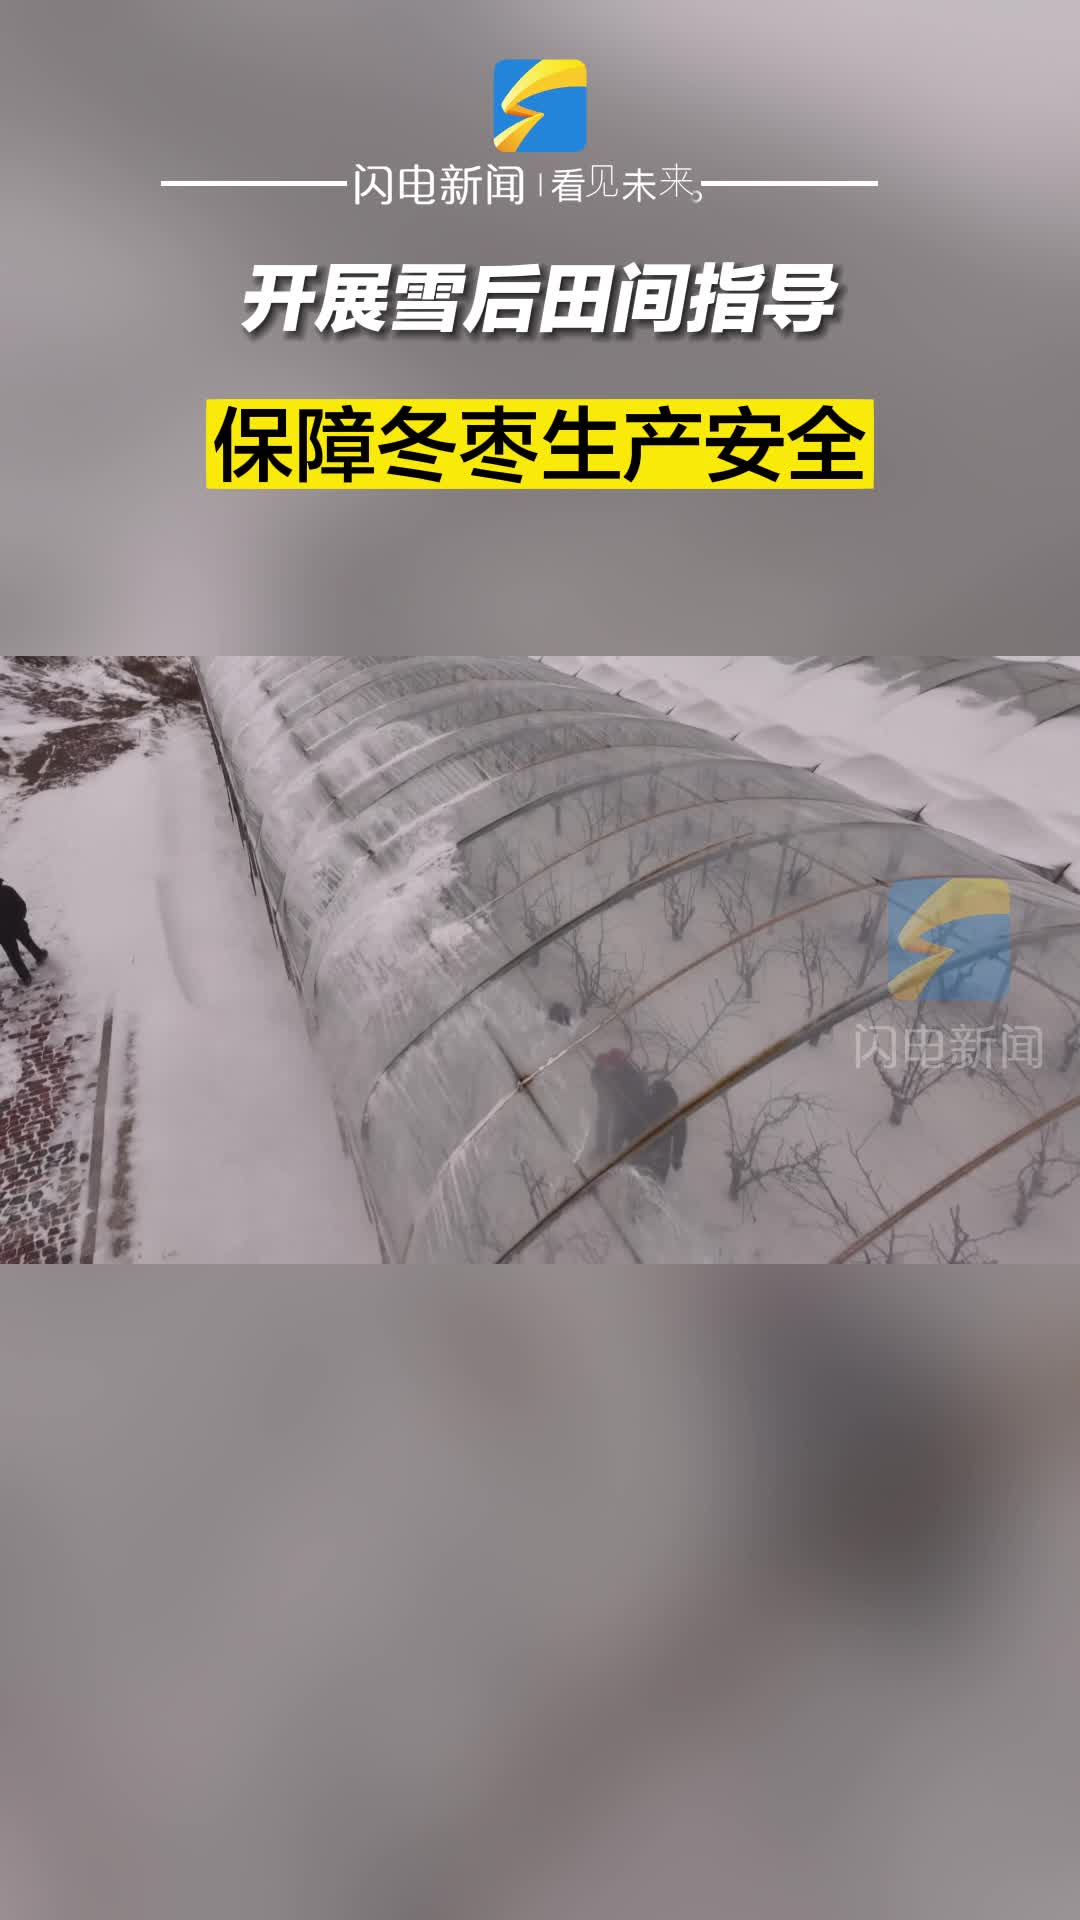 滨州沾化：开展雪后田间指导 保障冬枣生产安全